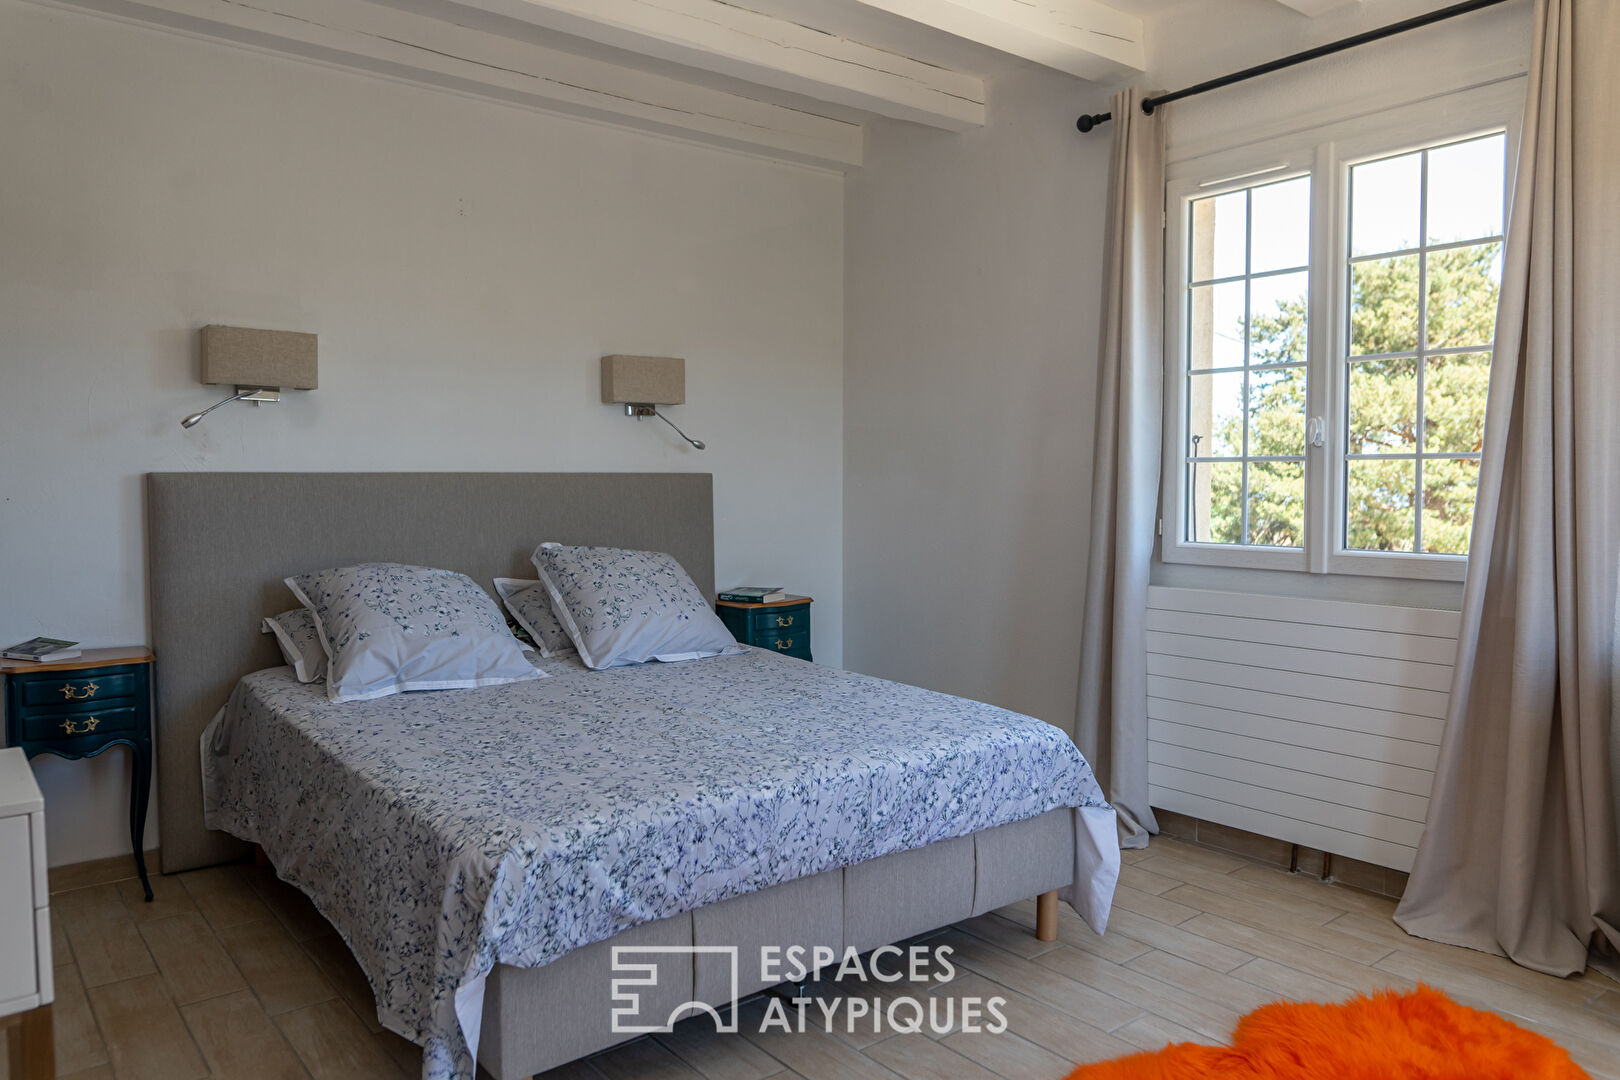 Villa isolée sur près d’un hectare offrant en toute quiétude une vue plongeante sur les monts d’Ardèche.